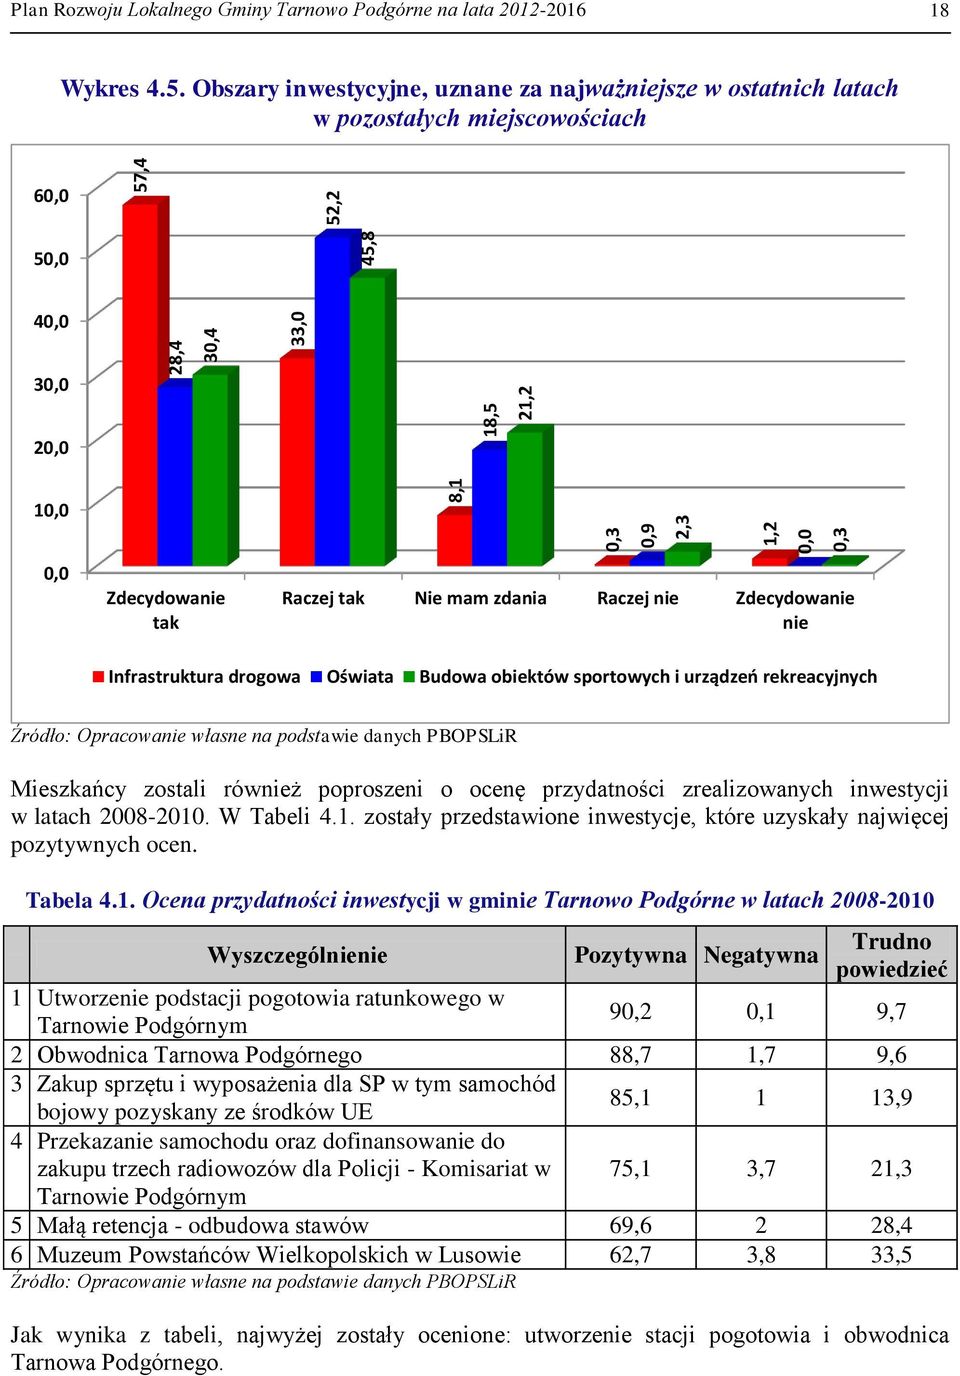 8 52,2 57,4 Plan Rozwoju Lokalnego Gminy Tarnowo Podgórne na lata 2012-2016 18 Wykres 4.5. Obszary inwestycyjne, uznane za najważniejsze w ostatnich latach w pozostałych miejscowościach 60,0 50,0